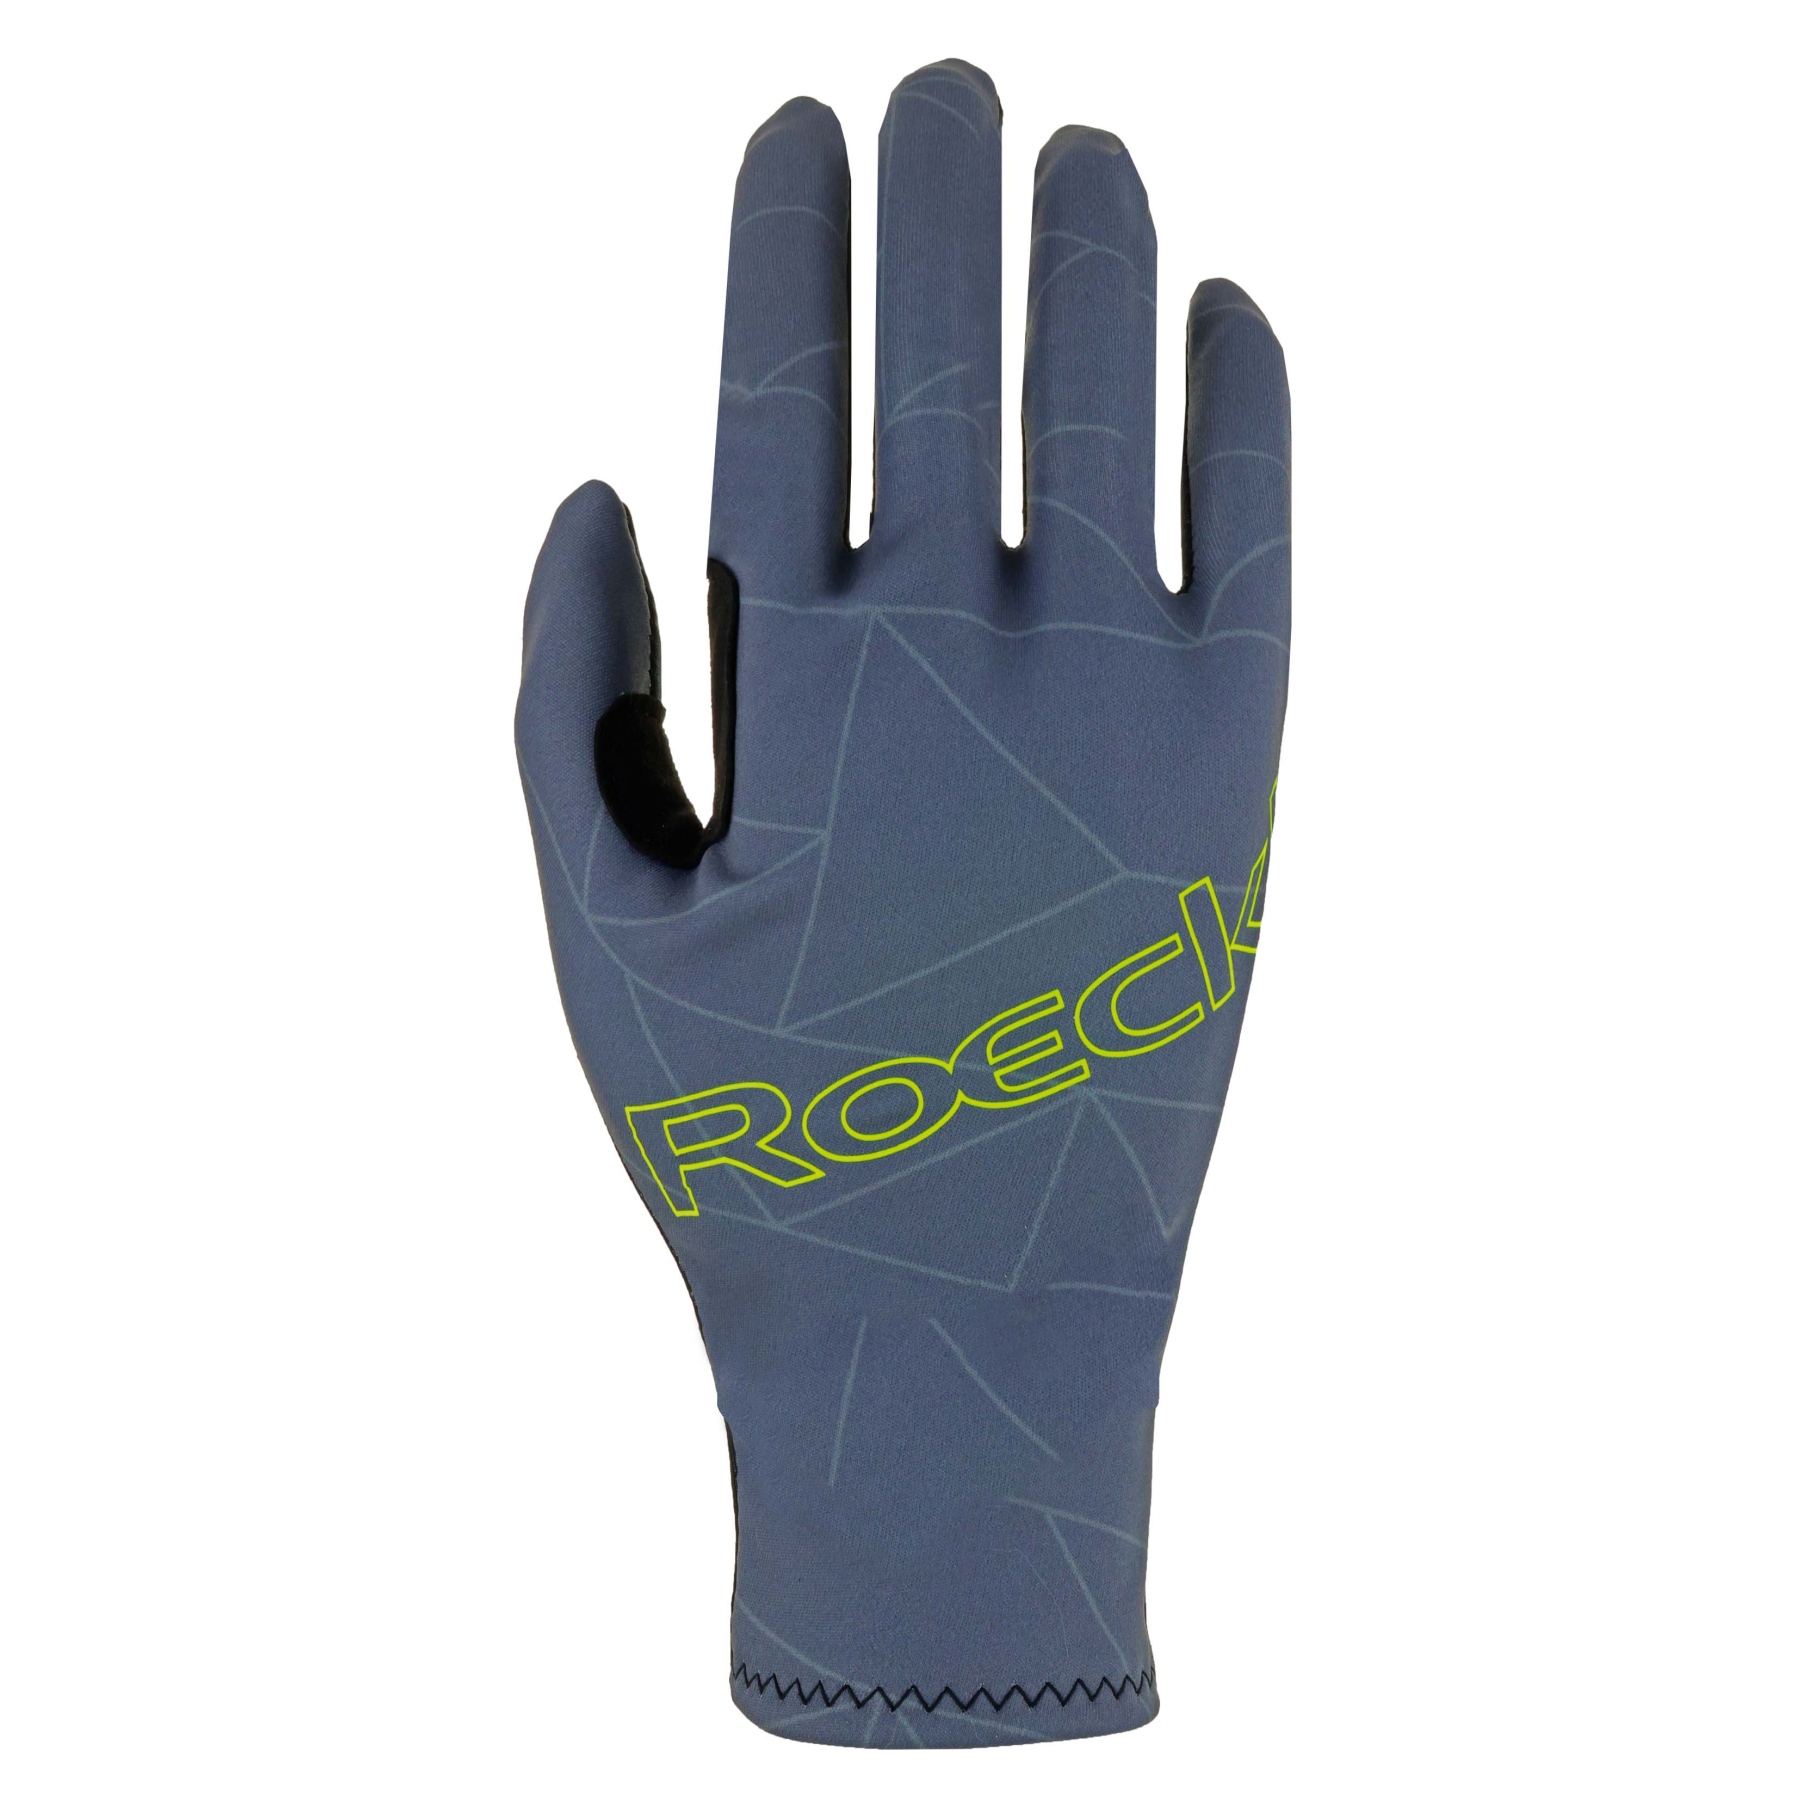 Produktbild von Roeckl Sports Raccano Fahrradhandschuhe - steel grey 8420